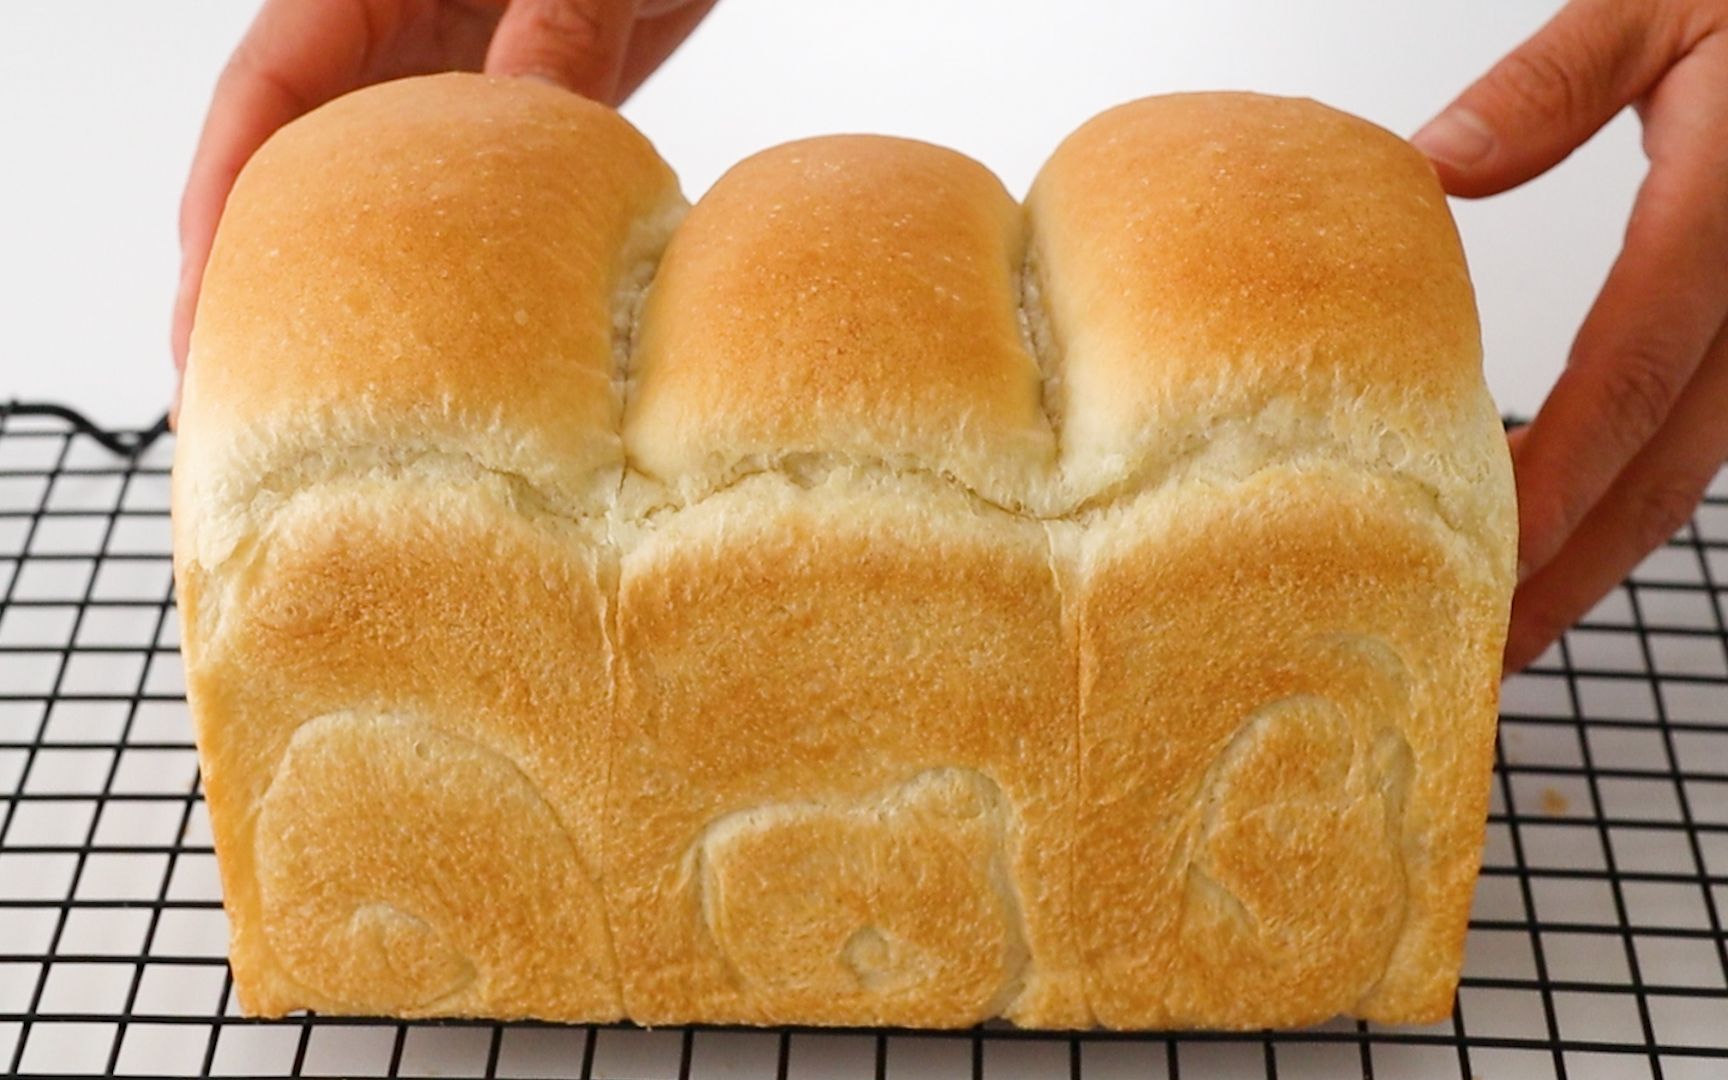 再也不用买面包了！无需揉面，无蛋，无黄油！发现这个最简单最便宜的面包食谱